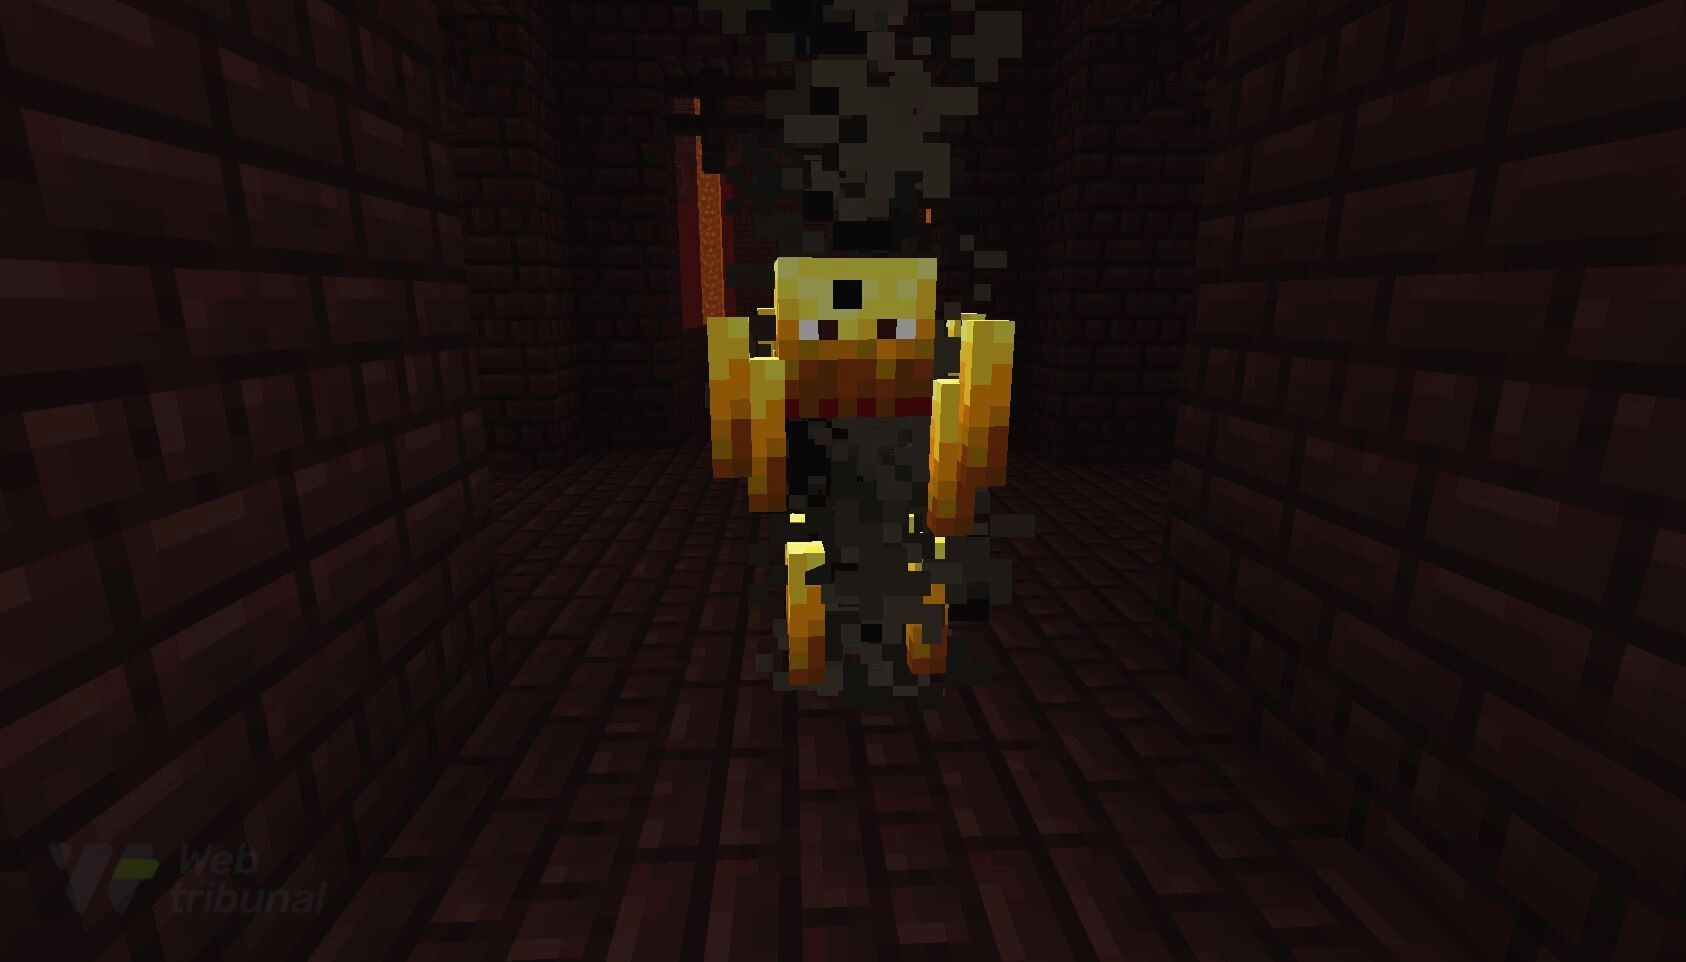 Um inimigo Blaze em uma Fortaleza Nether no Minecraft